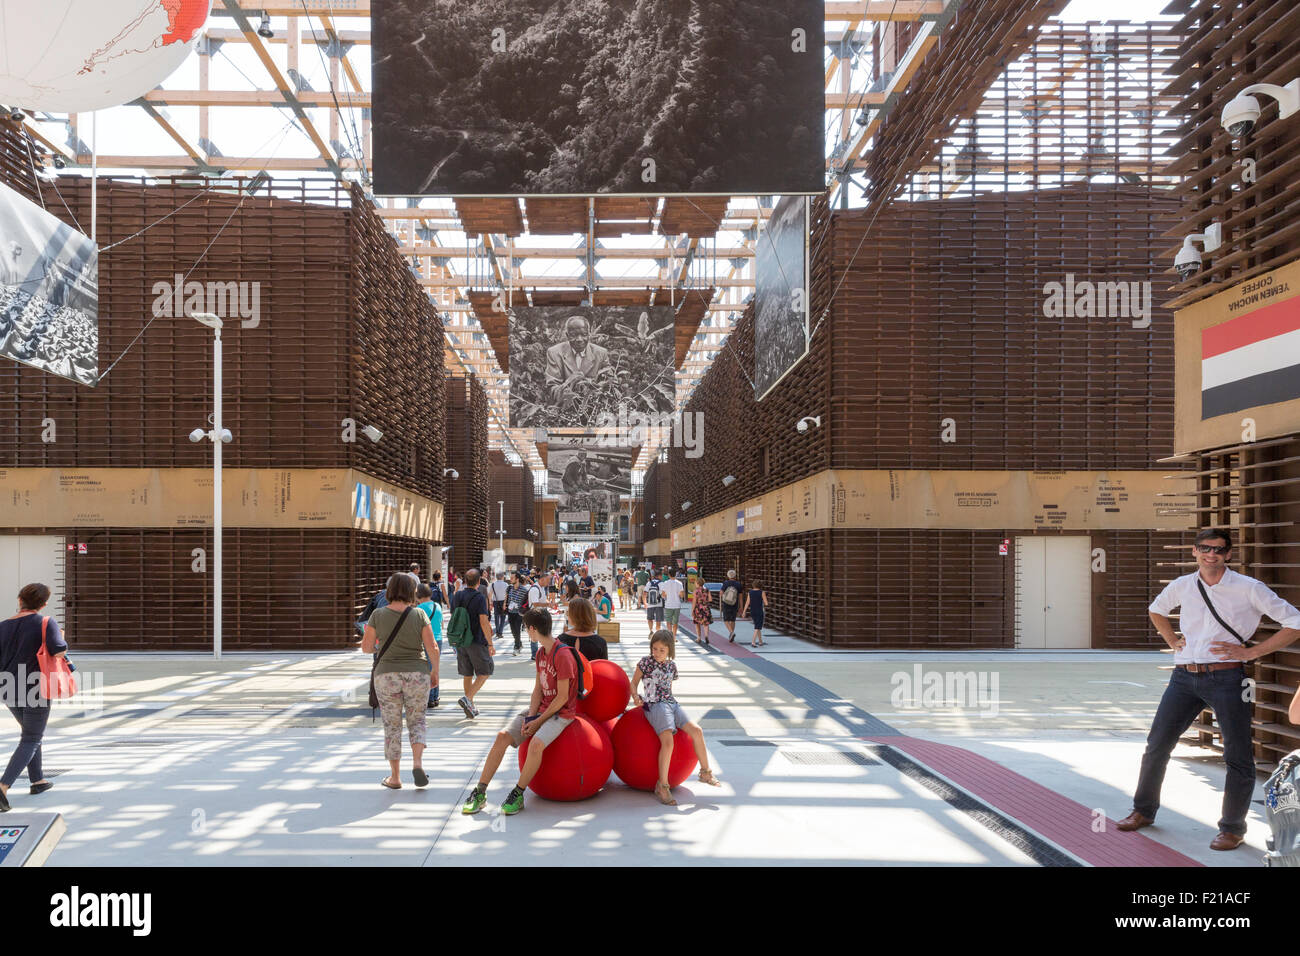 Milano, 12 agosto 2015: Dettaglio dello Yemen il padiglione alla fiera Expo 2015 Italia. Foto Stock